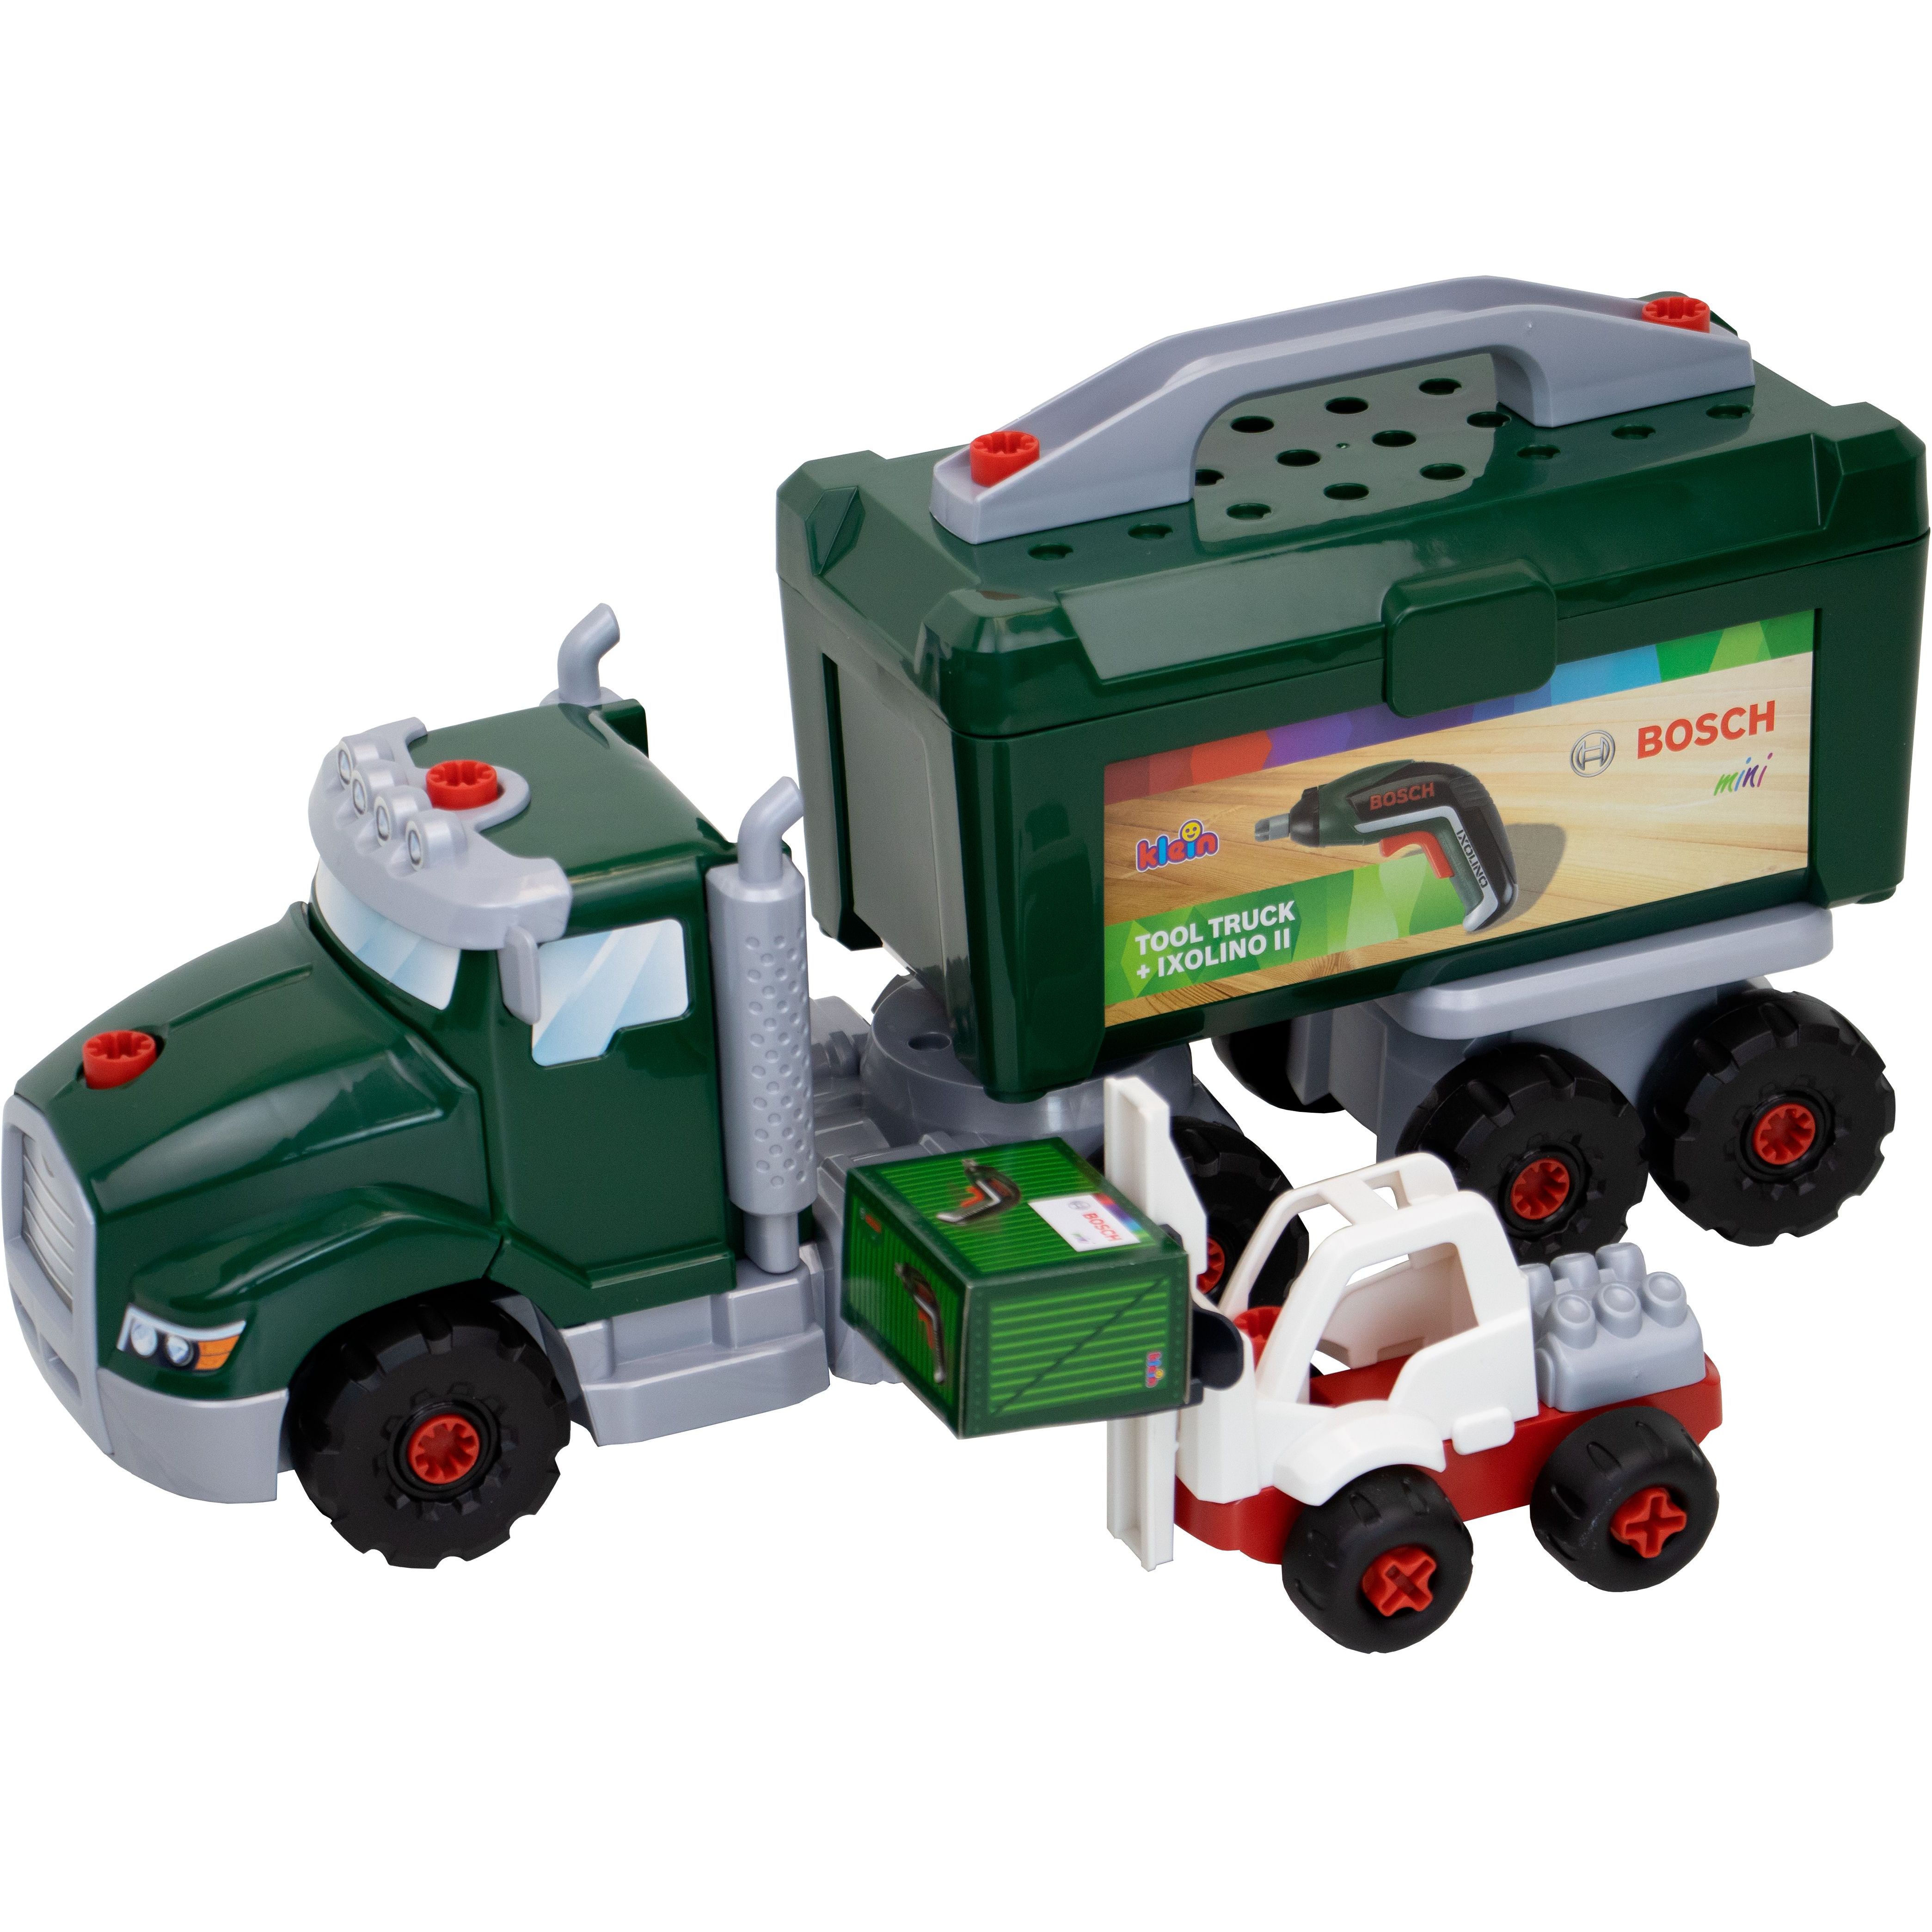 Іграшковий набір Bosch Mini Ixolino II з вантажівкою (8640) - фото 3